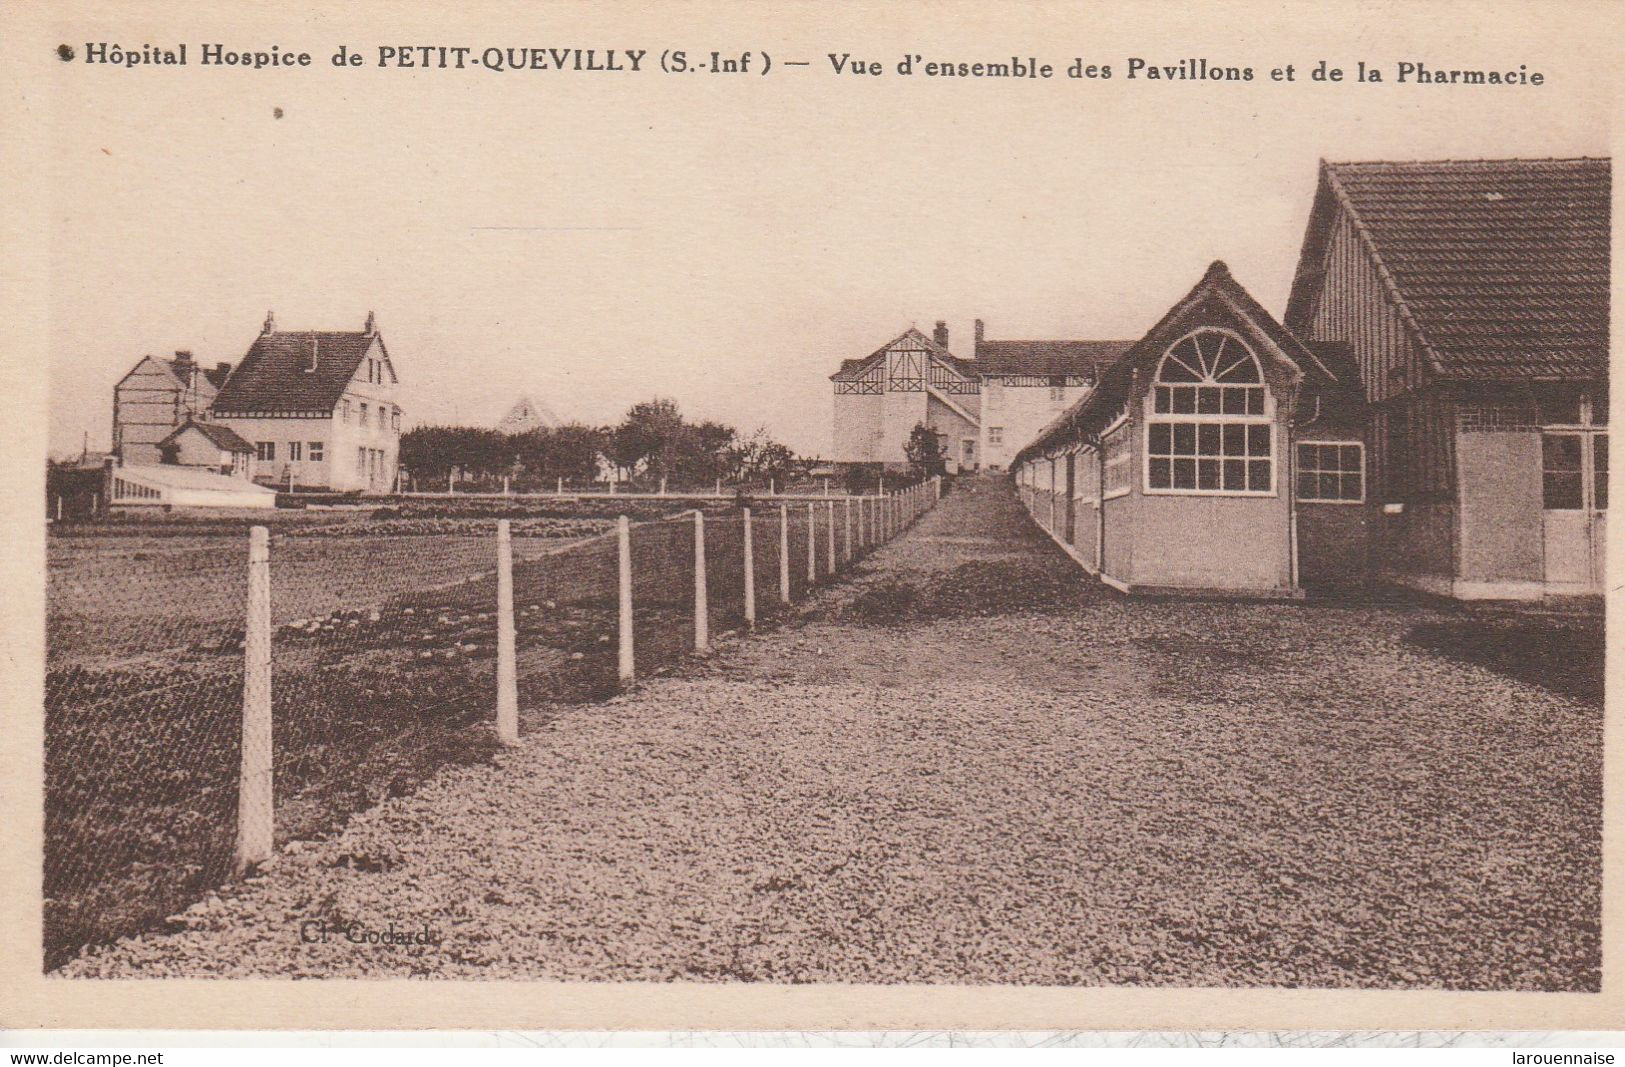 76 - PETIT QUEVILLY - Hopital Hospice De Petit Quevilly - Vue D' Ensemble Des Pavillons Et De La Pharmacie - Le Petit-Quevilly